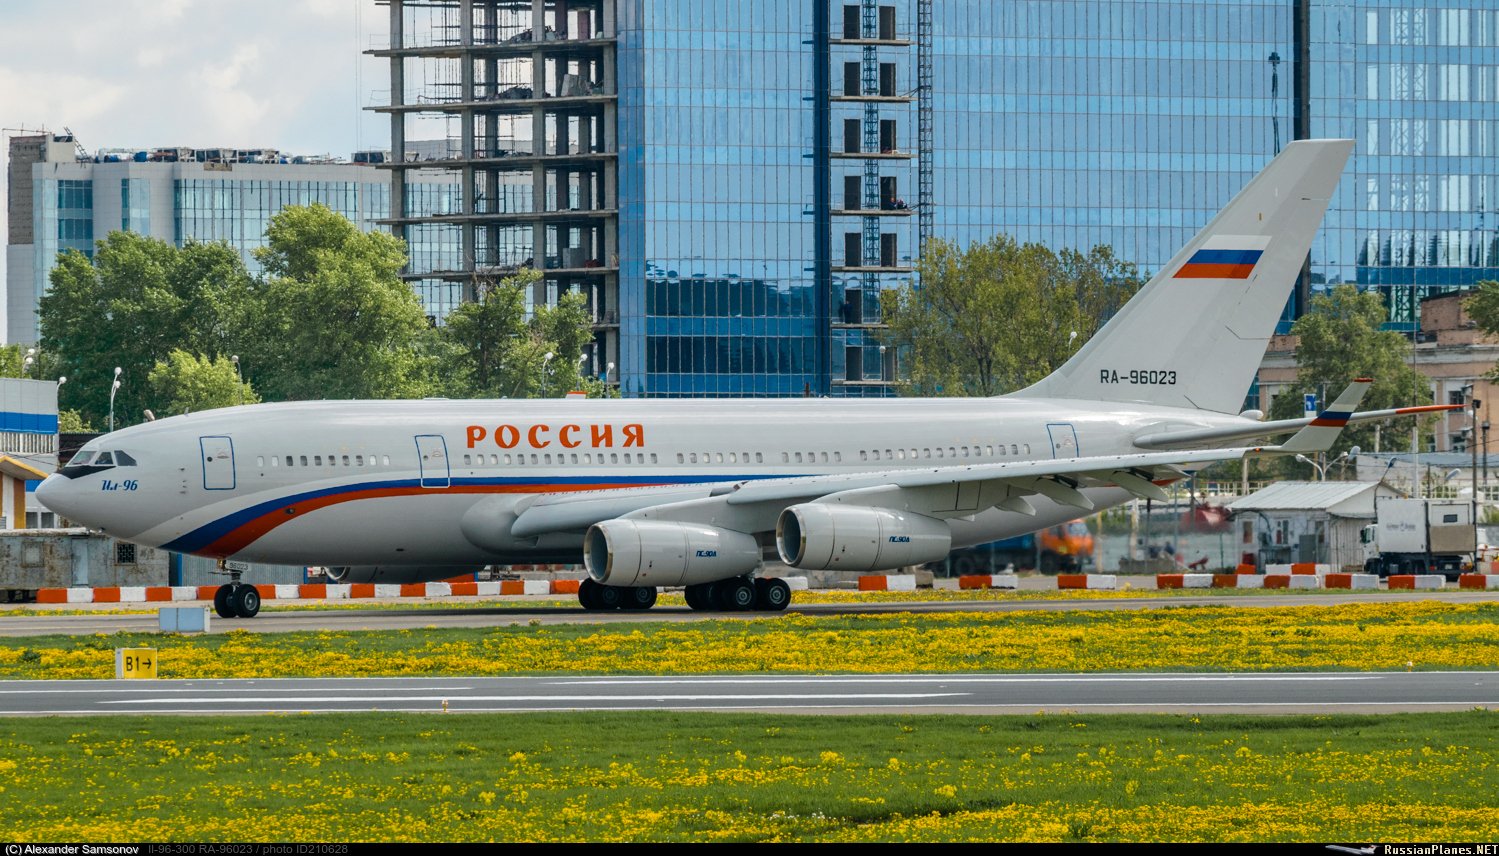 Номера самолетов россии